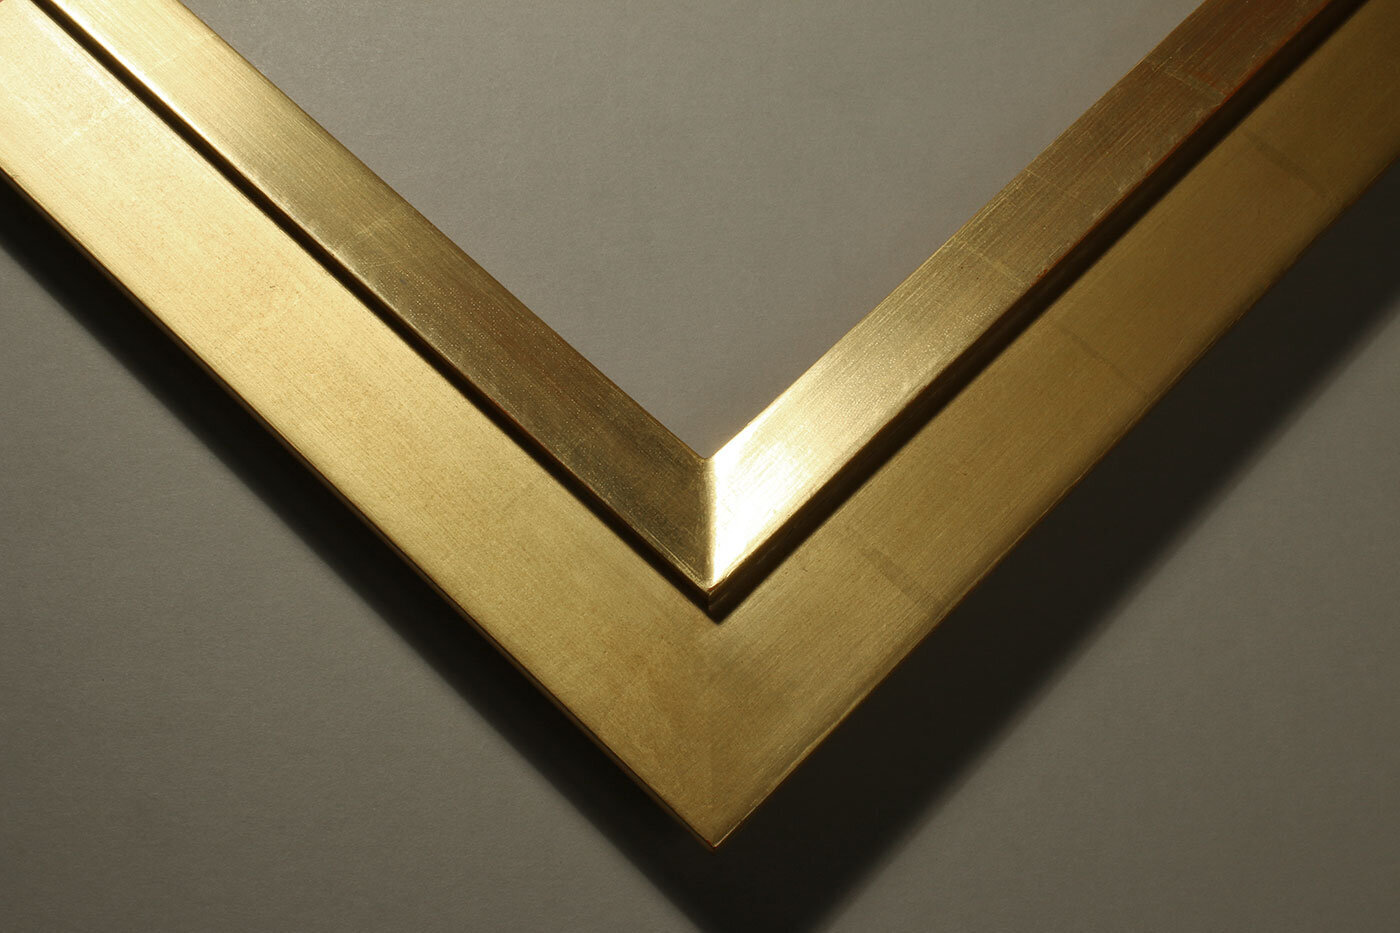 closed-corner-frame-with-gold-leaf.jpg